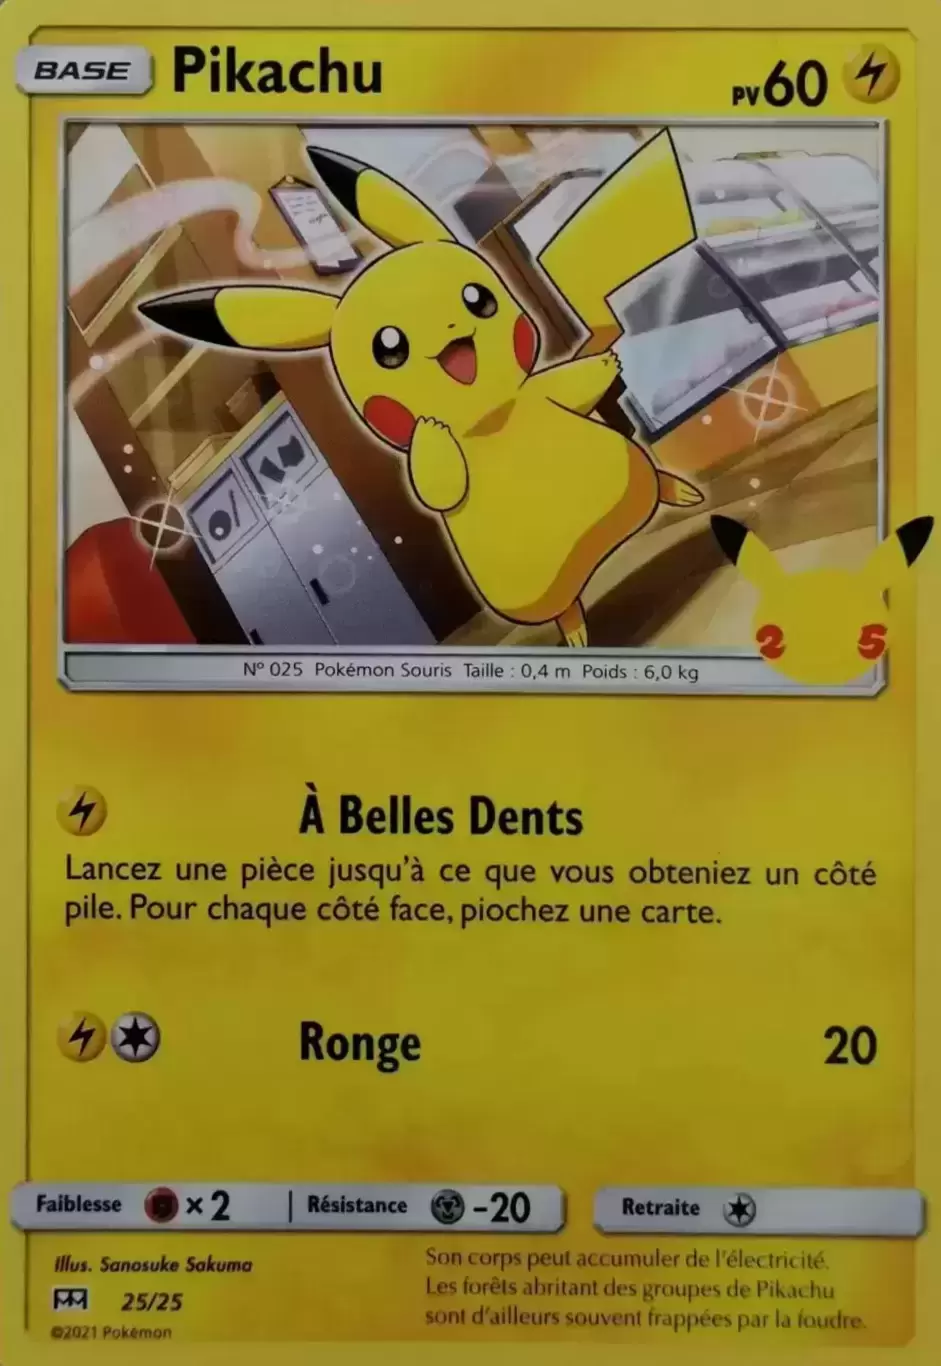 Quel est la valeur de la carte Pokémon Pikachu ?